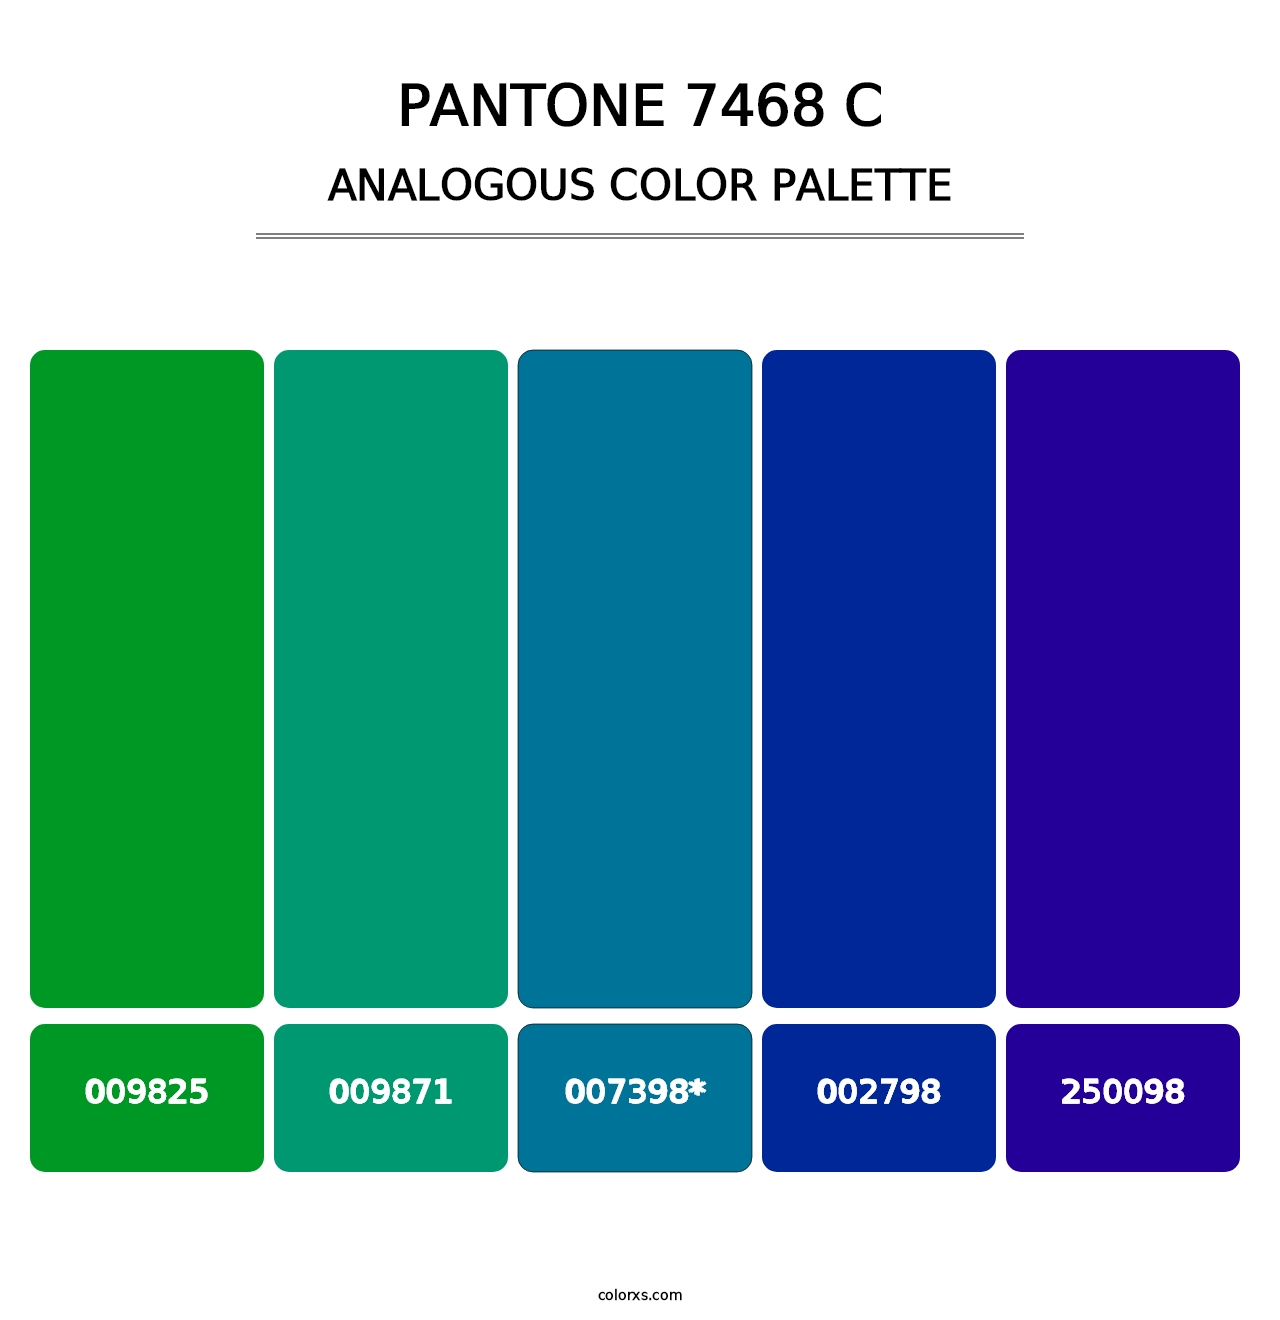 PANTONE 7468 C - Analogous Color Palette